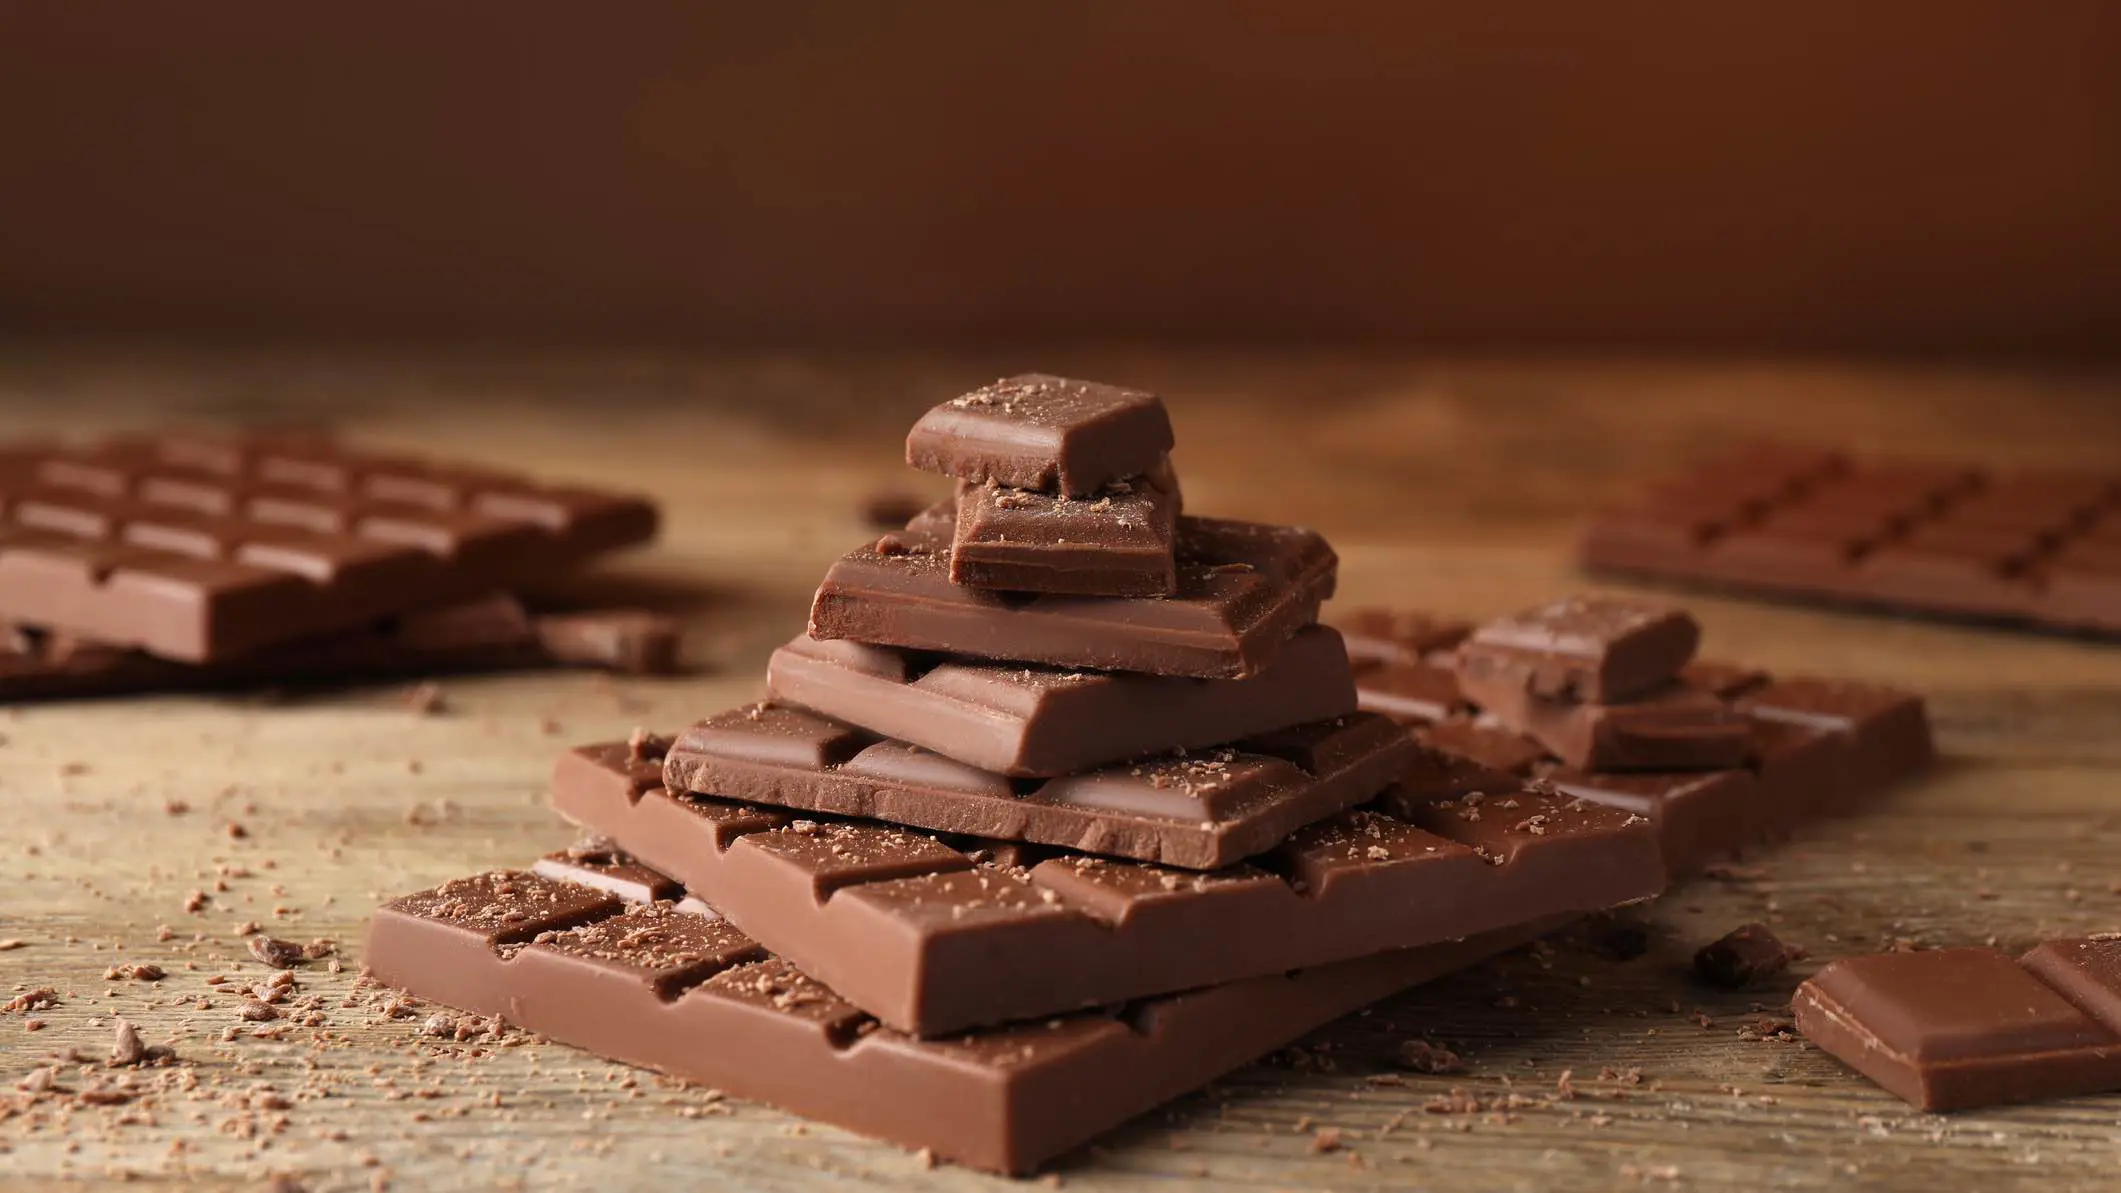 عكس المتداول.. تناول الشوكولاتة لا يزيد الوزن (فيديو)